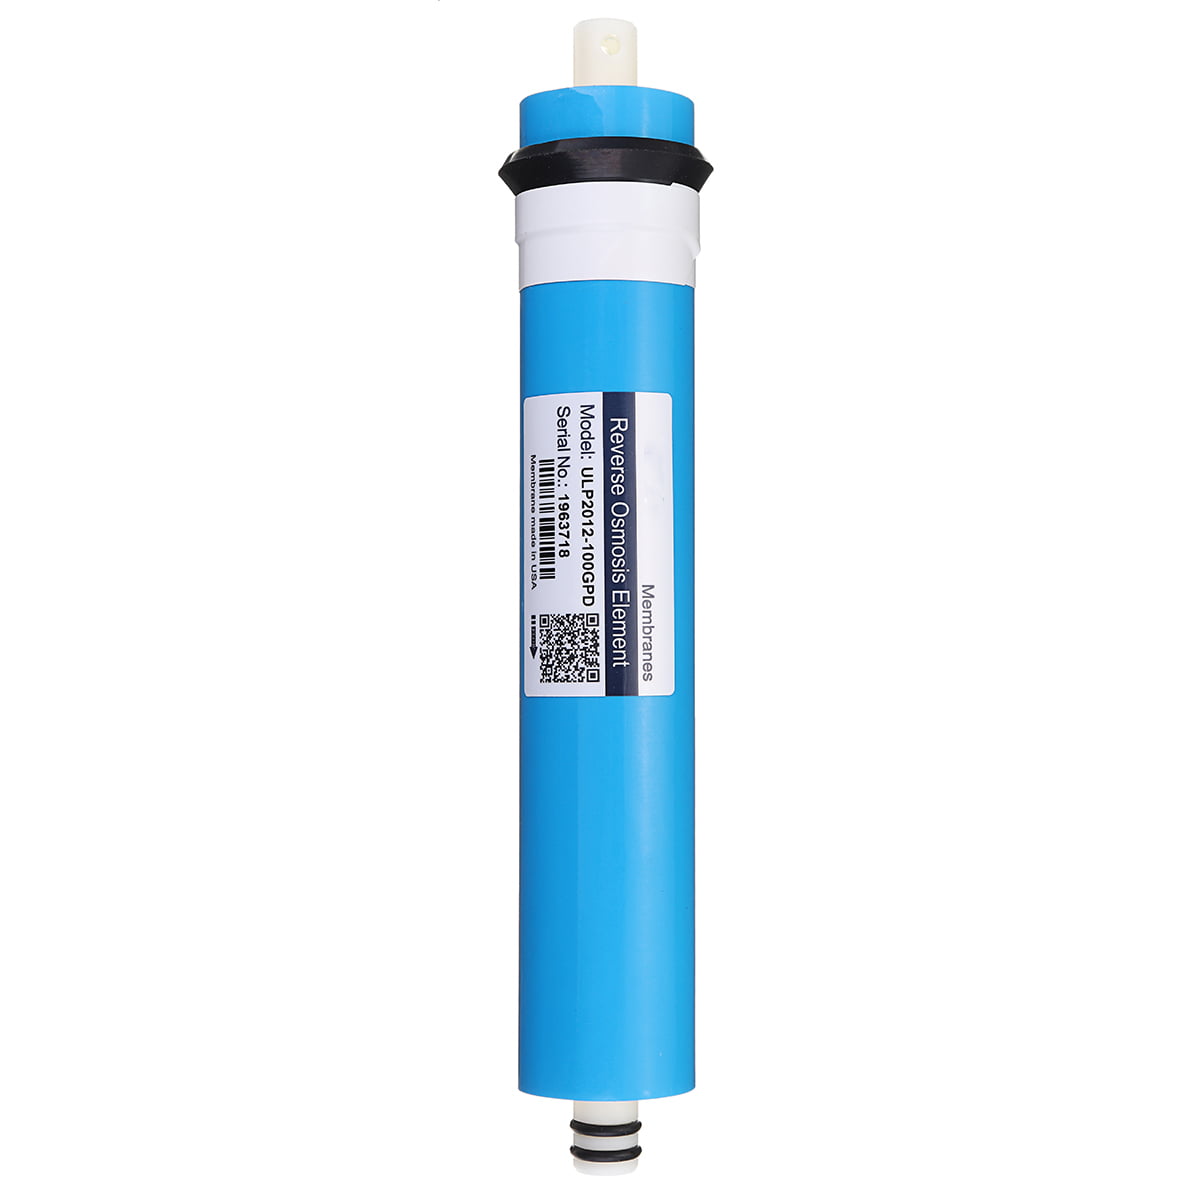 ZhiwenCZW Cartucho filtro de agua ósmosis inversa membrana RO 50 GPD 75 GPD Reemplazo familia 